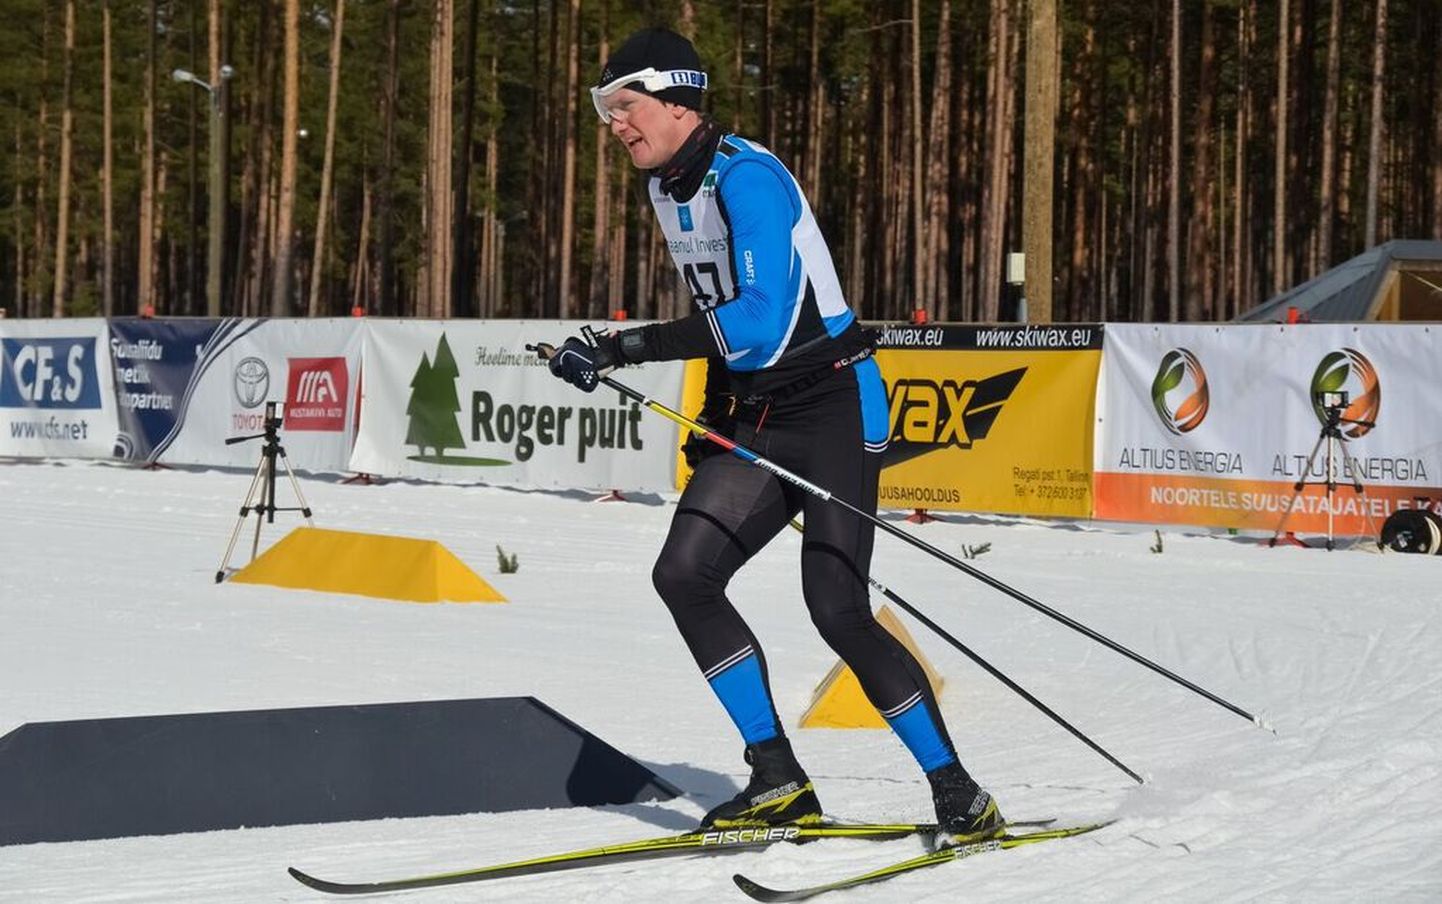 Endine jalgpallur Raio Piiroja oli eile Pärnumaal Jõulumäel valmis selleks, et peab Eesti meistrivõistlustel sõitma 50 km klassikatehnikas enamiku distantsist ihuüksinda. Nii ka läks.